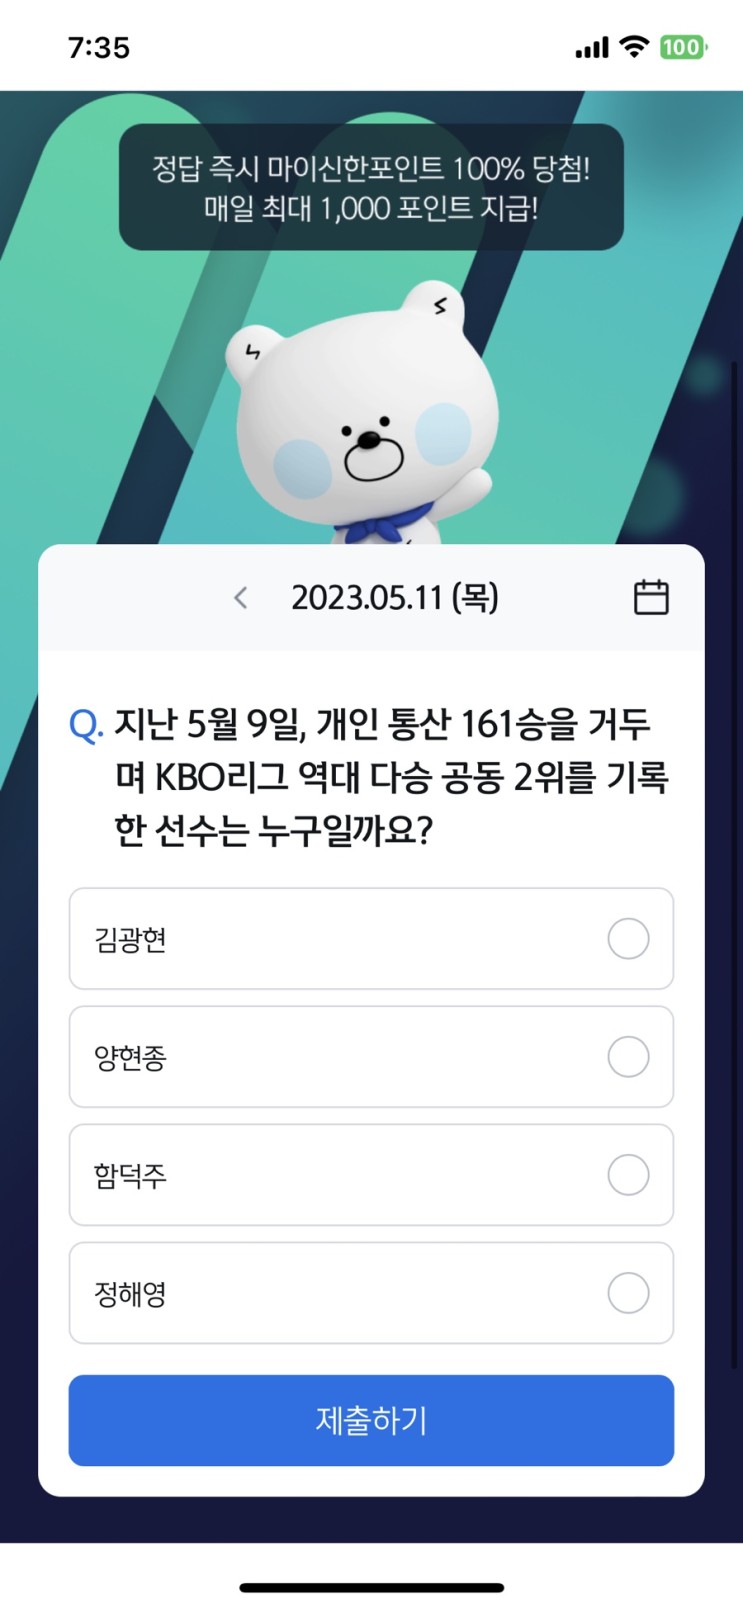 신한 쏠퀴즈 정답 (쏠야구) 5월11일 - 개인 통산 161승을 거두며 KBO리그 역대 다승 공동 2위를 기록한 선수는?